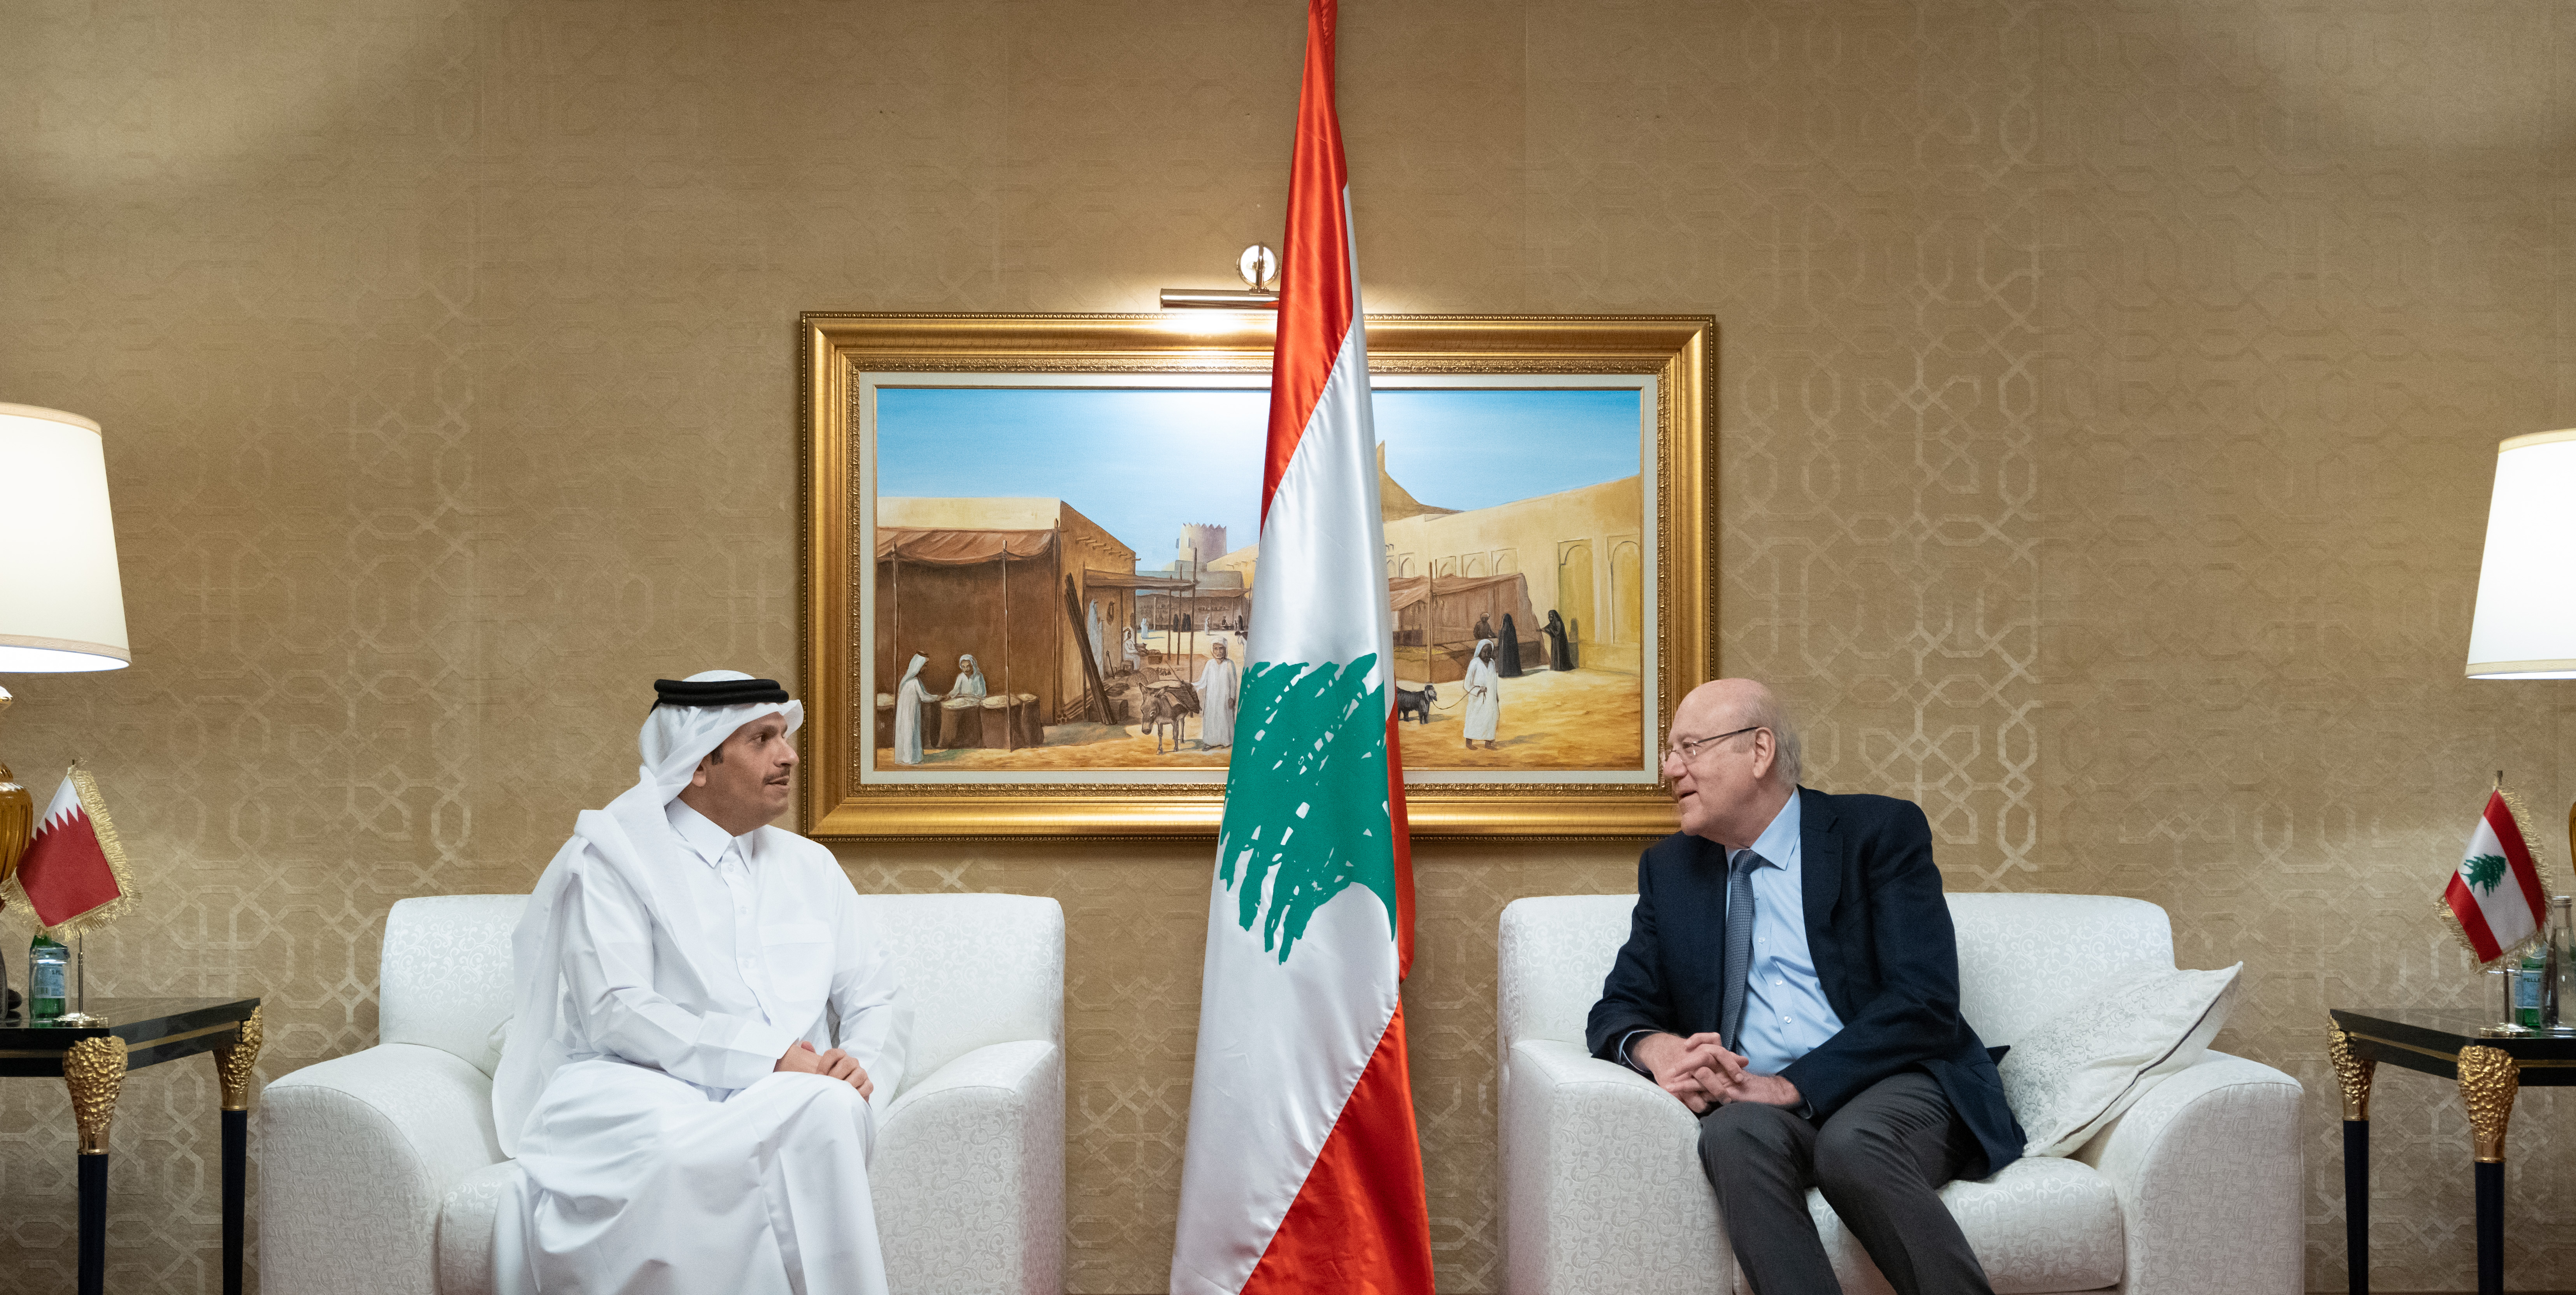 رئيس مجلس الوزراء اللبناني يجتمع مع نائب رئيس مجلس الوزراء وزير الخارجية 